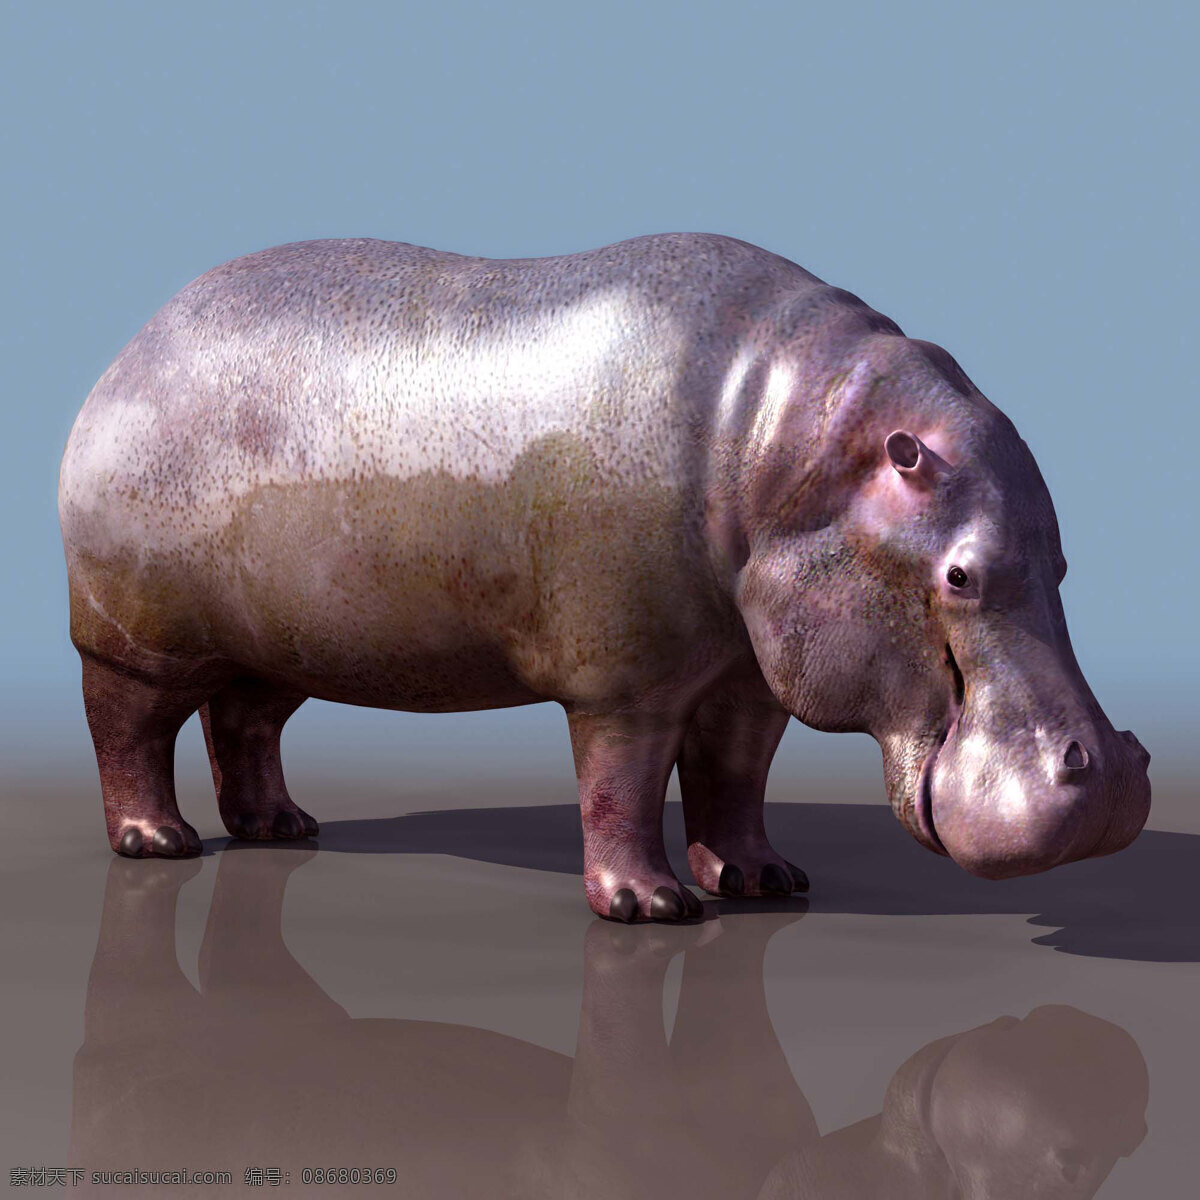 高模 hippopotamus 河马 动物模型 陆生动物 3d模型素材 动植物模型